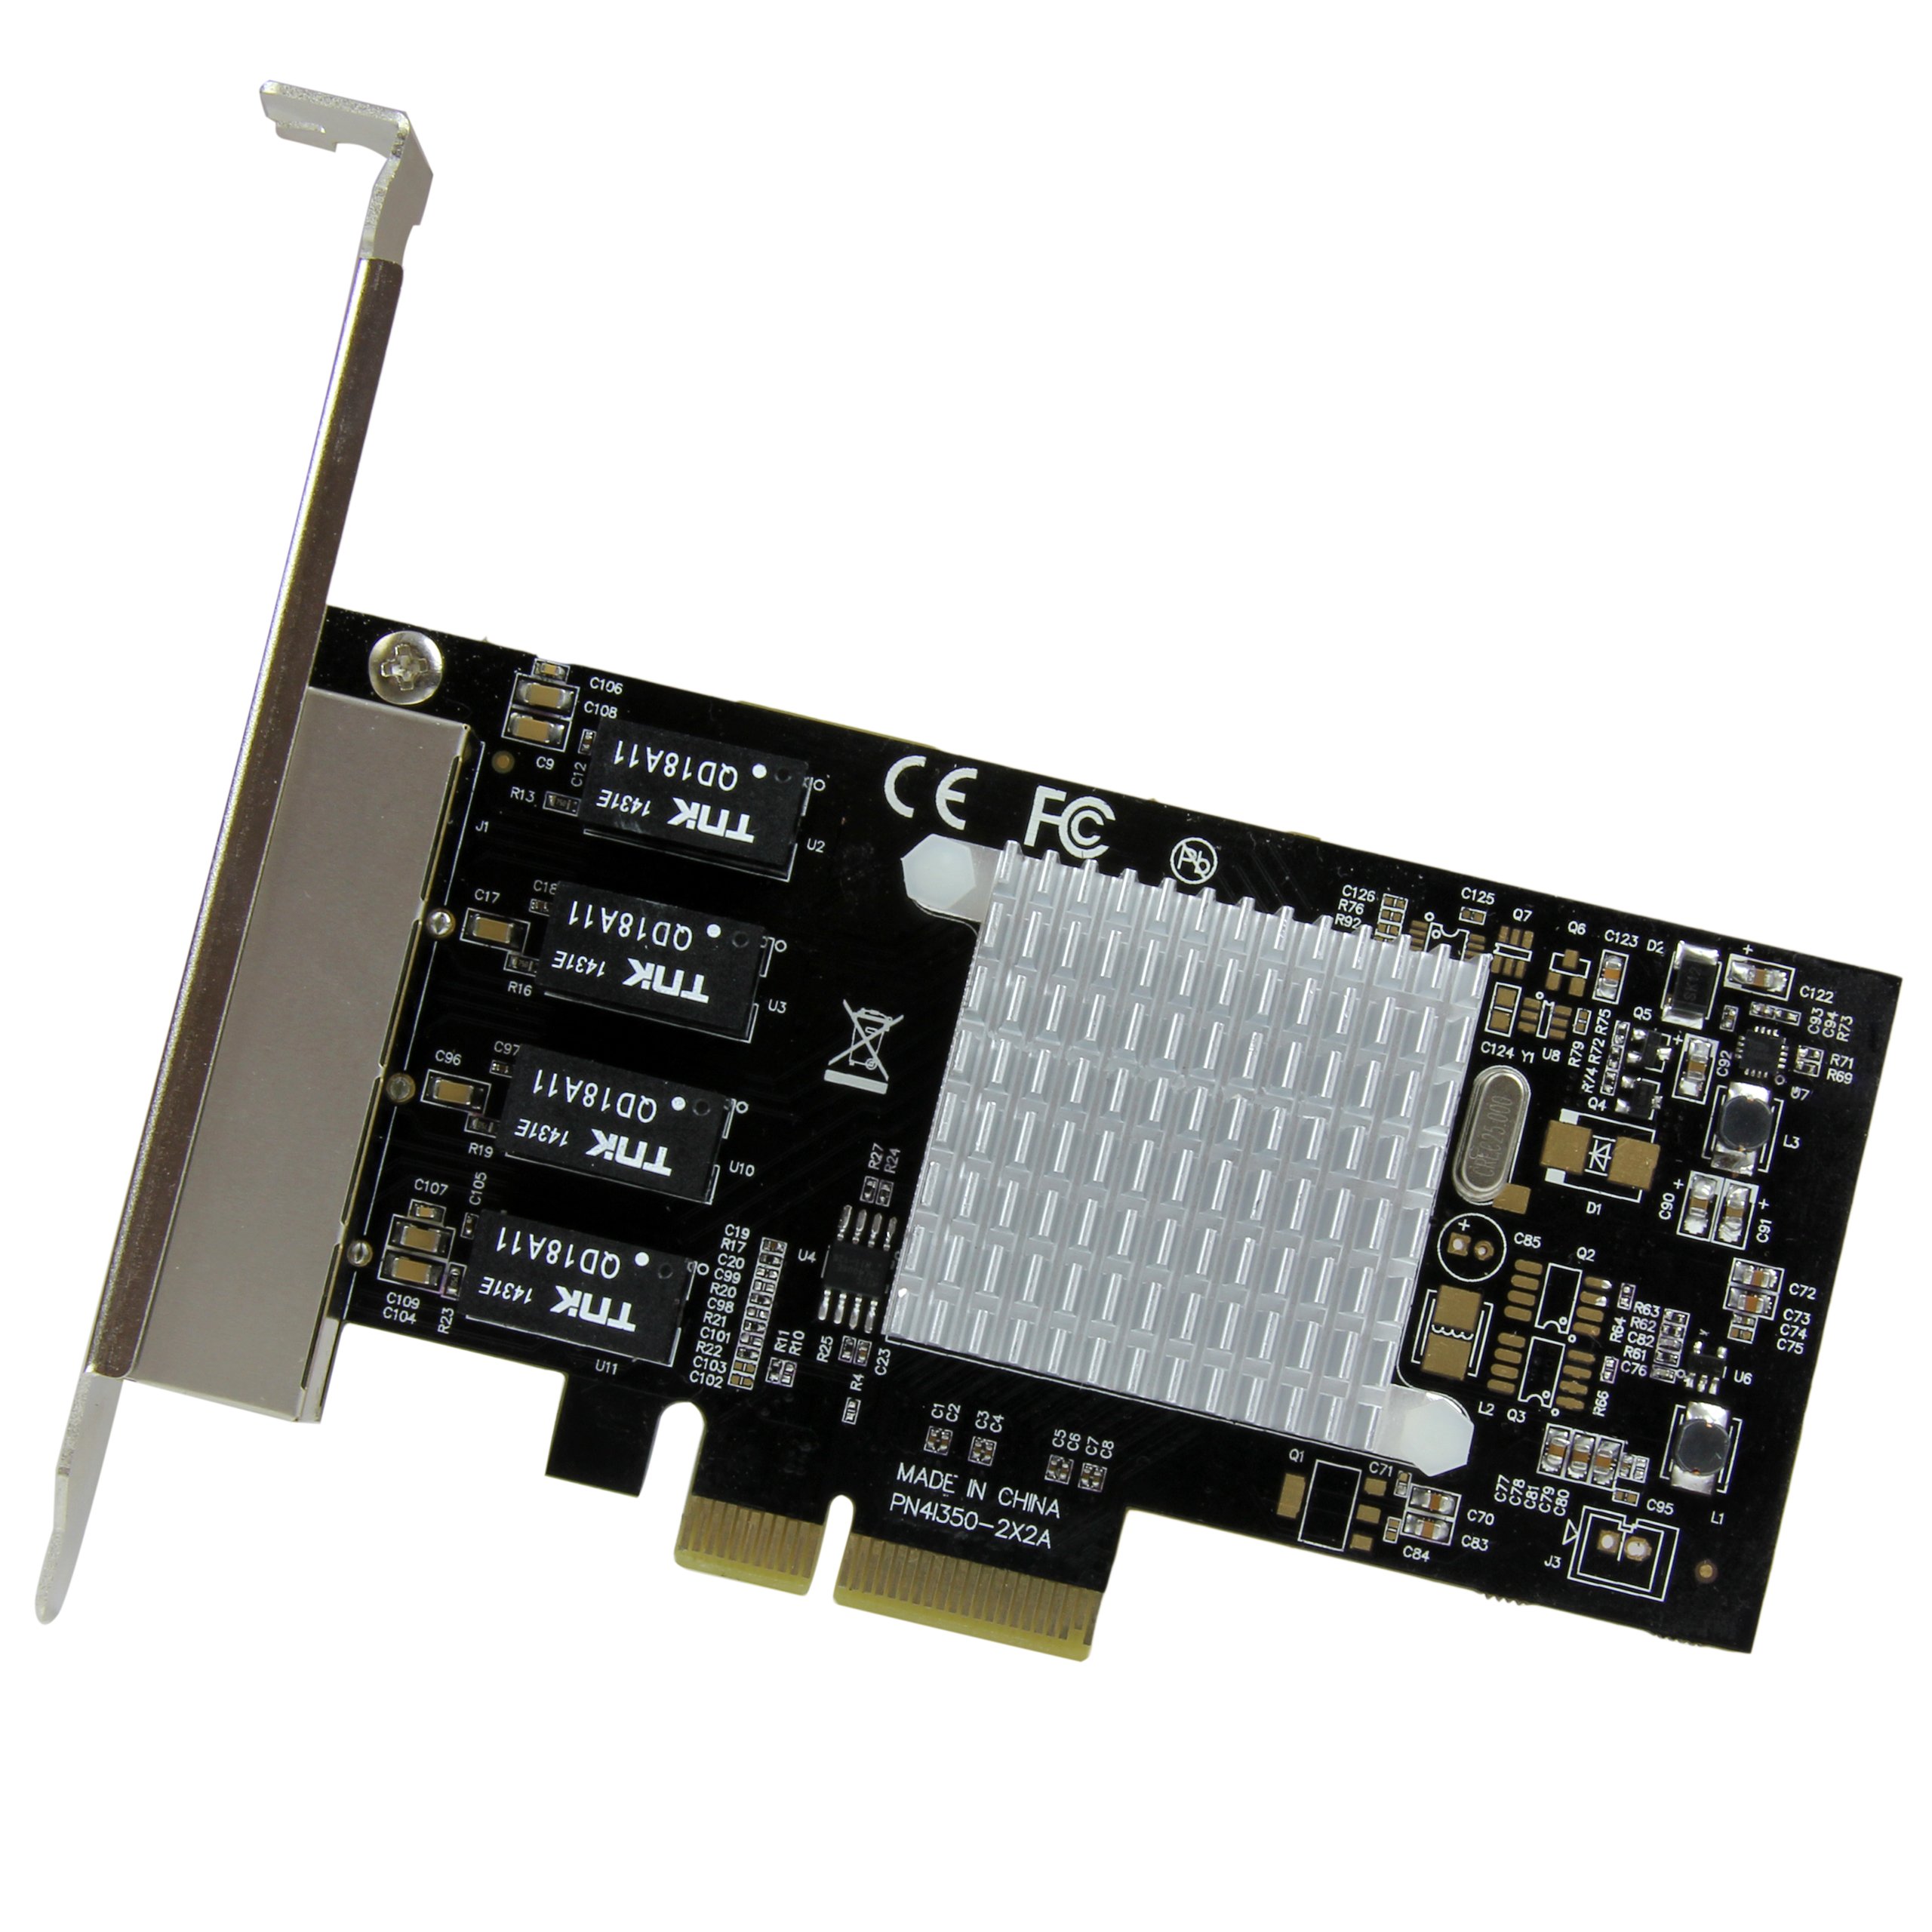 StarTech.com 4 Port PCIe Network Card - RJ45 Port - Intel i350 Chipset - Ethernet Server / Desktop Network Card – Dual Gigabit NIC Card (ST4000SPEXI),Black